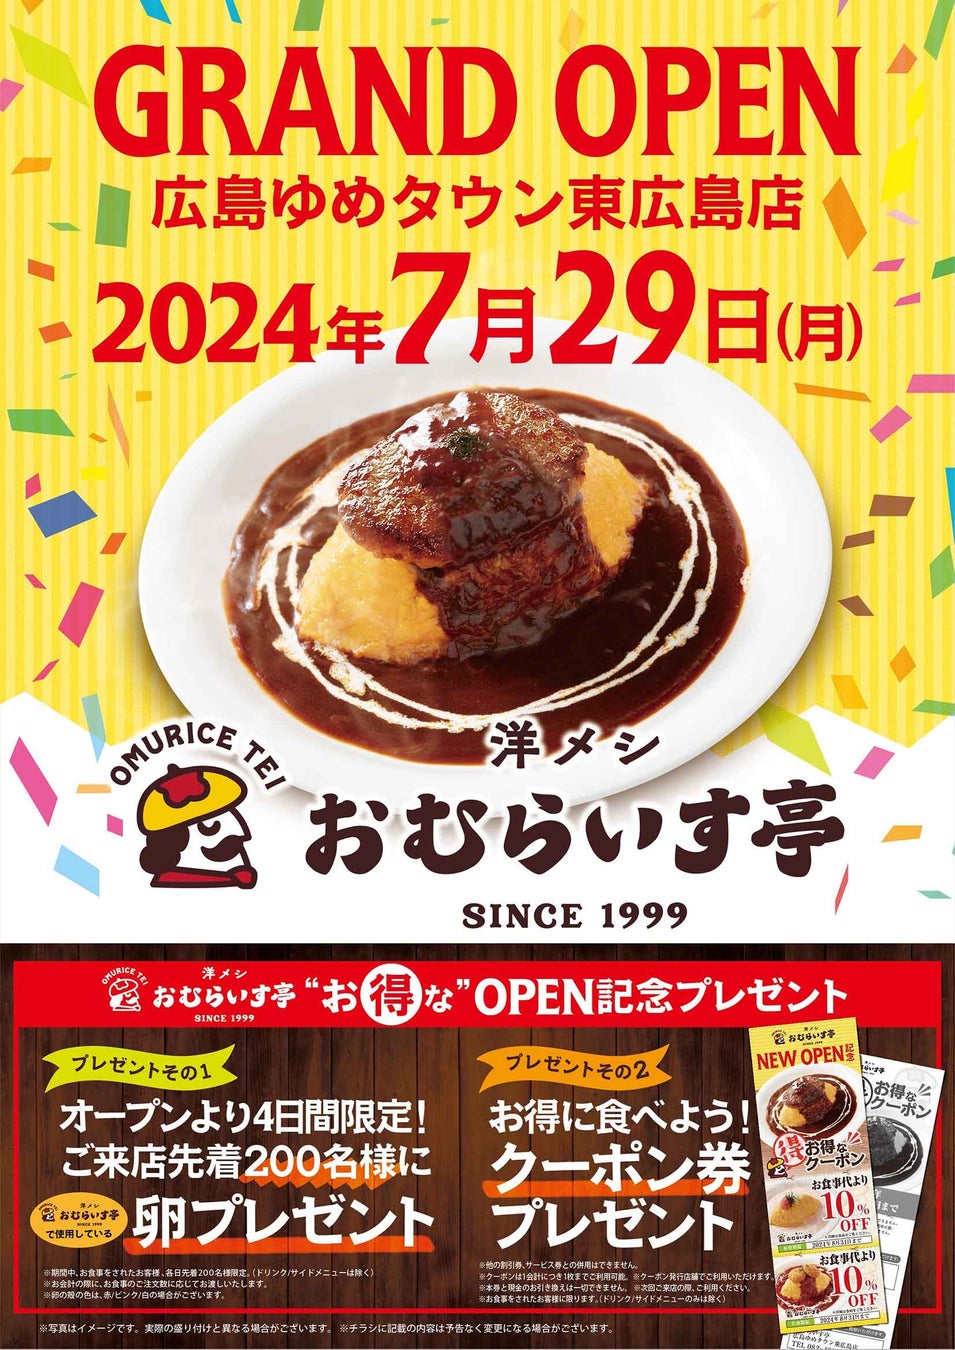 円安の夏はおうちでアメリカンを楽しもう！
新商品「横須賀バーガーソース」で夏バテ対策！
7月24日に発売